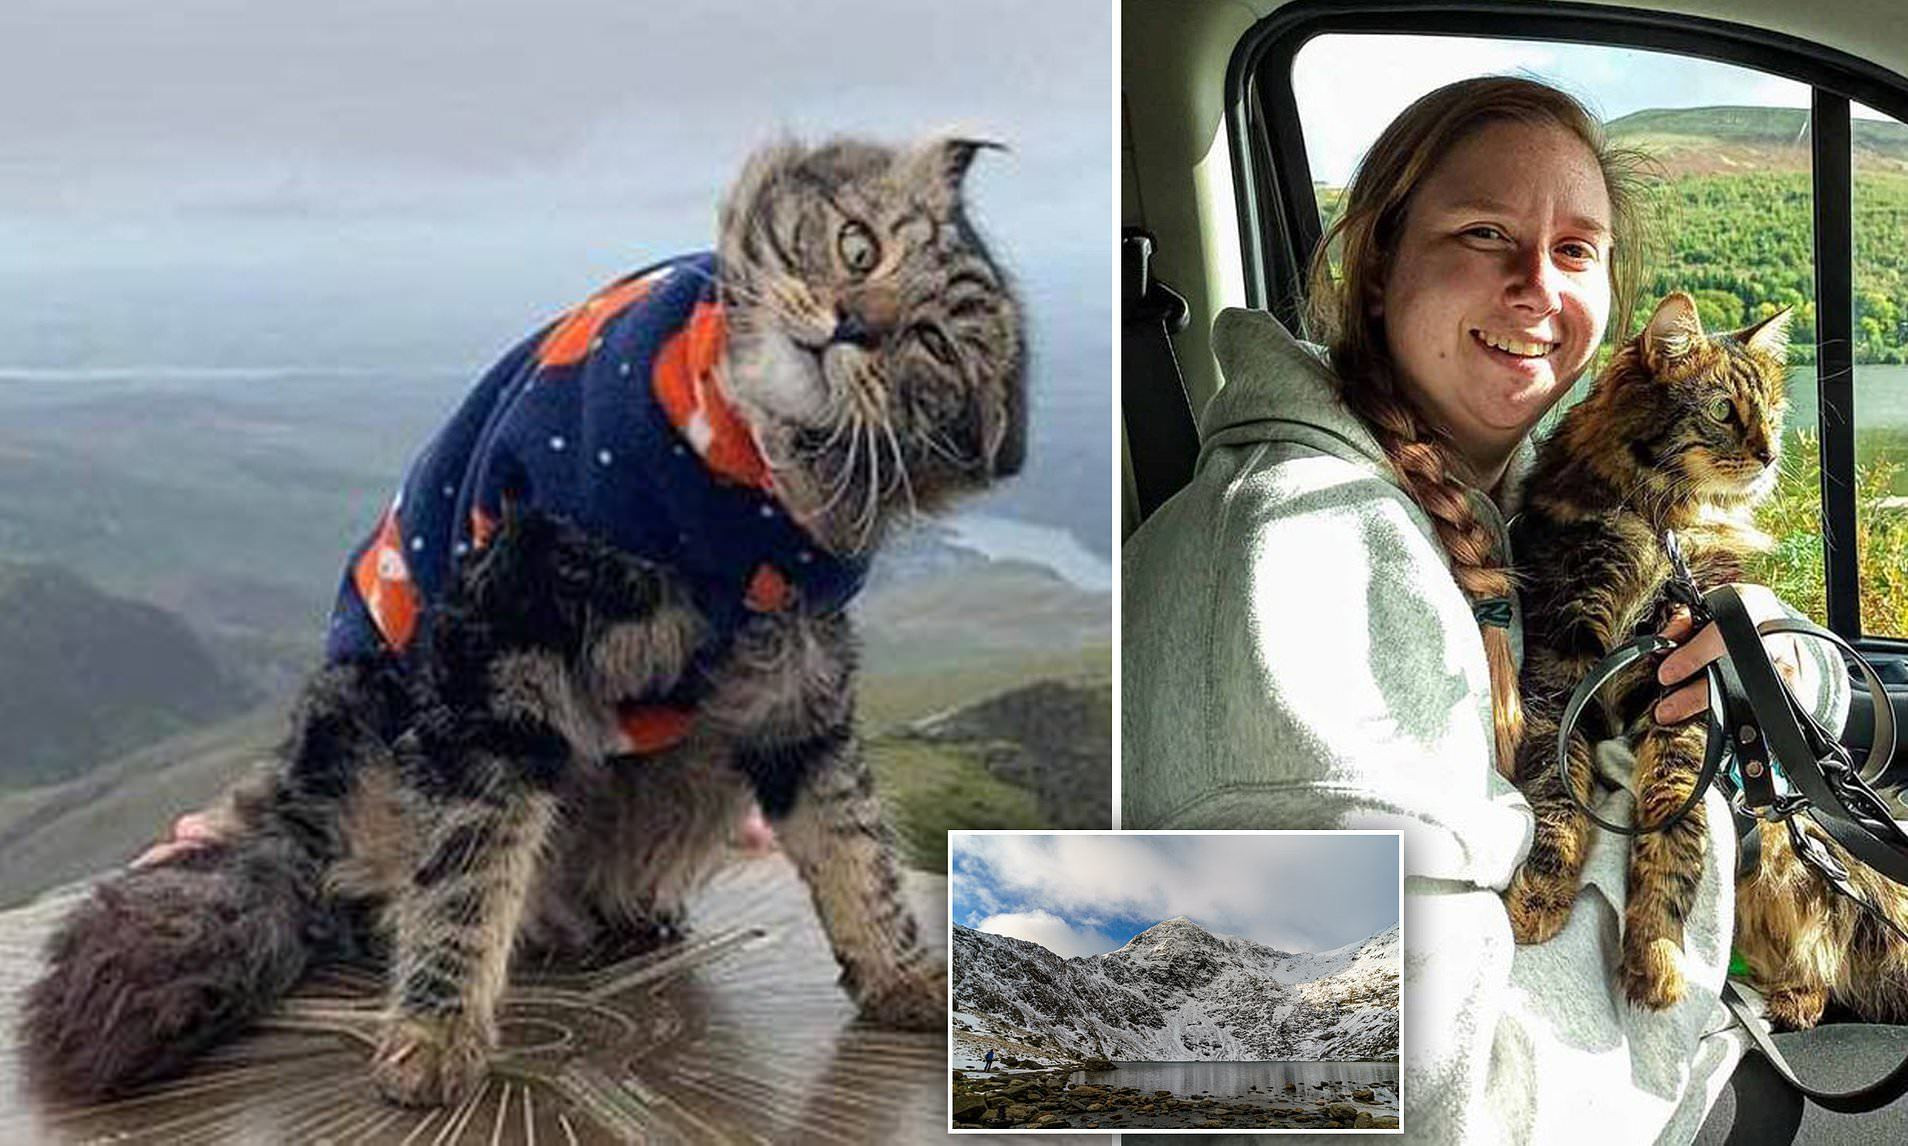 Mèo nổi tiếng sau khi chinh phục ngọn núi cao hơn 1.000 mét